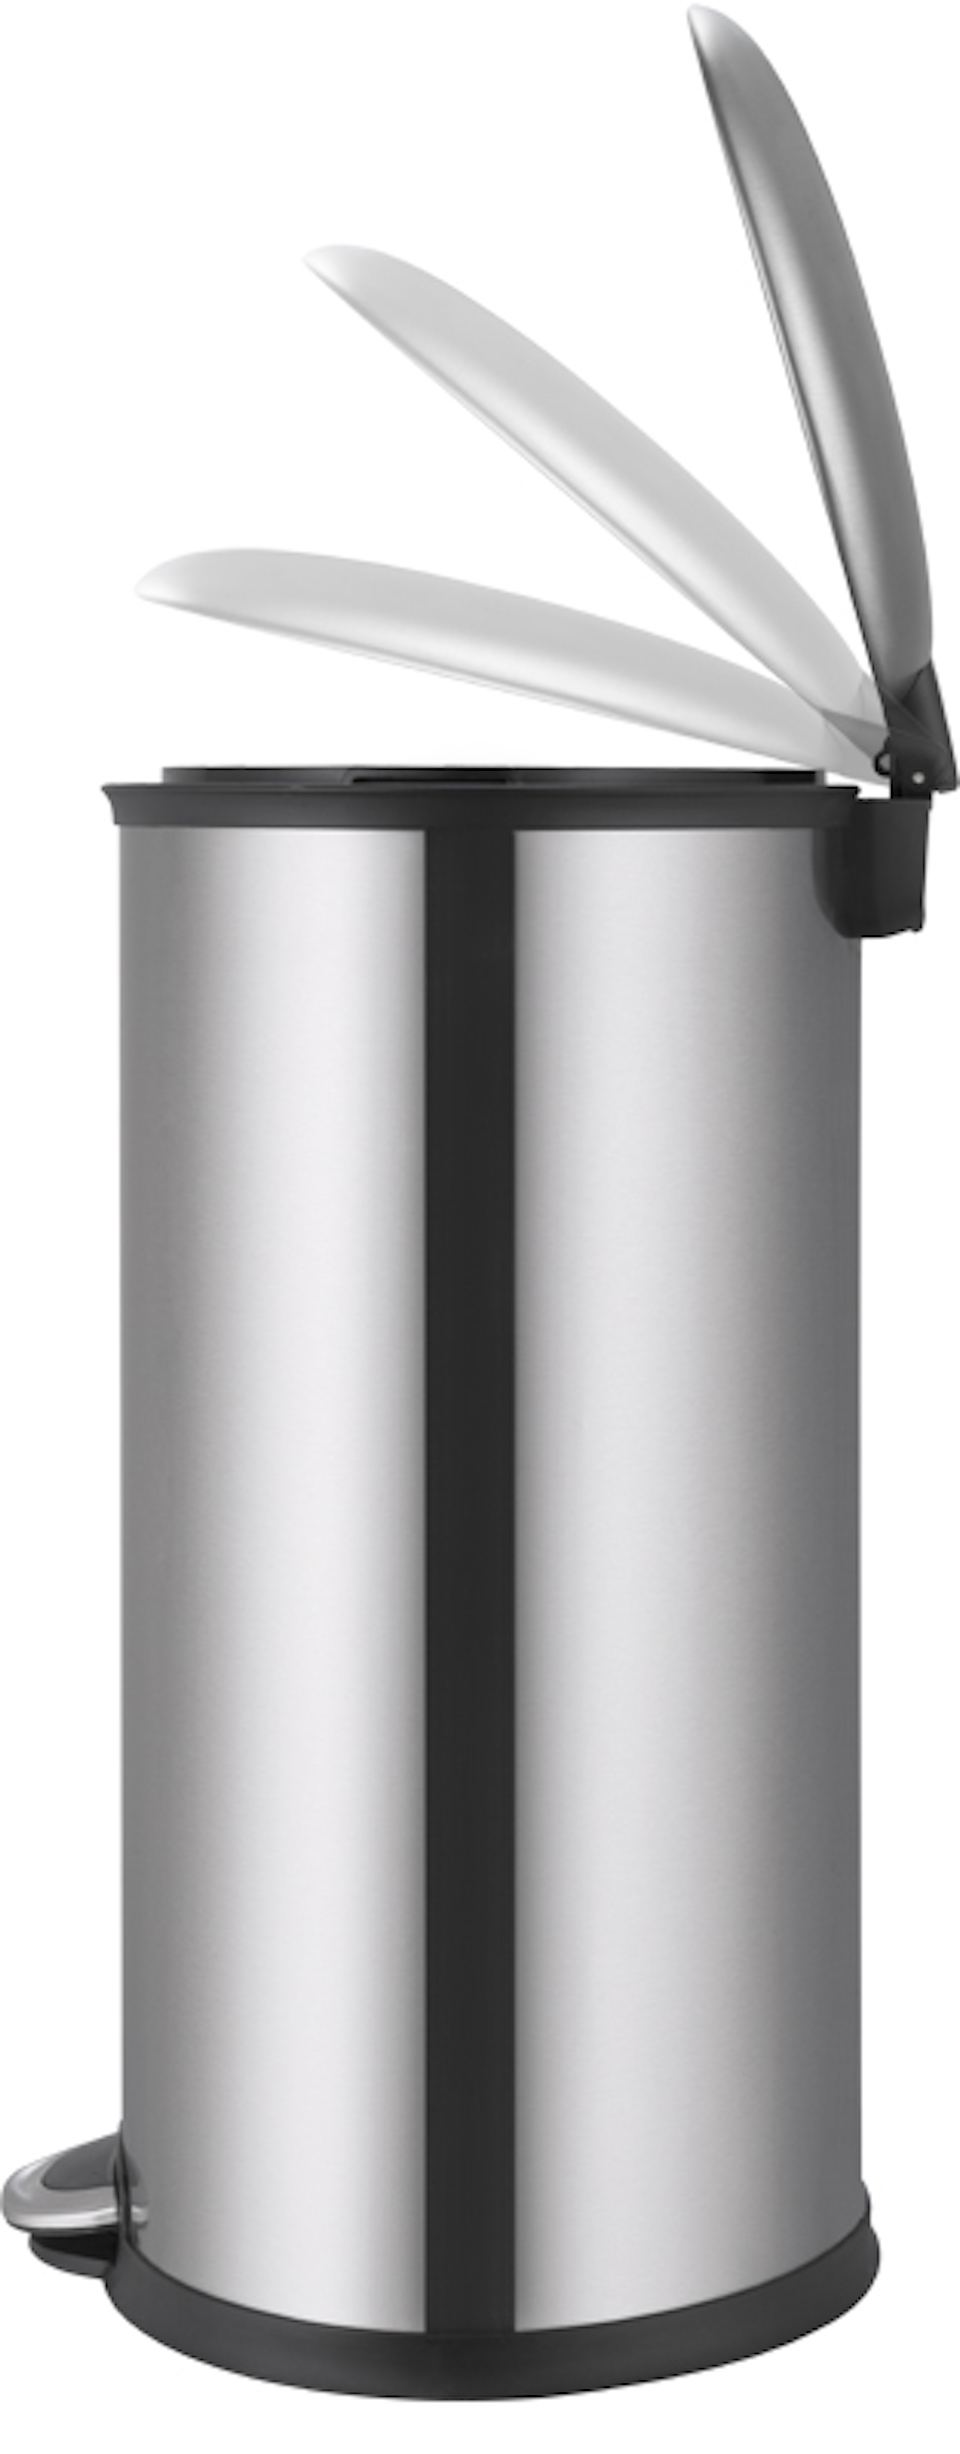 Ellipsenförmiger Treteimer aus gebürstetem Edelstahl | 30 Liter, HxBxT 65,3x32,5x35,6cm | Silber